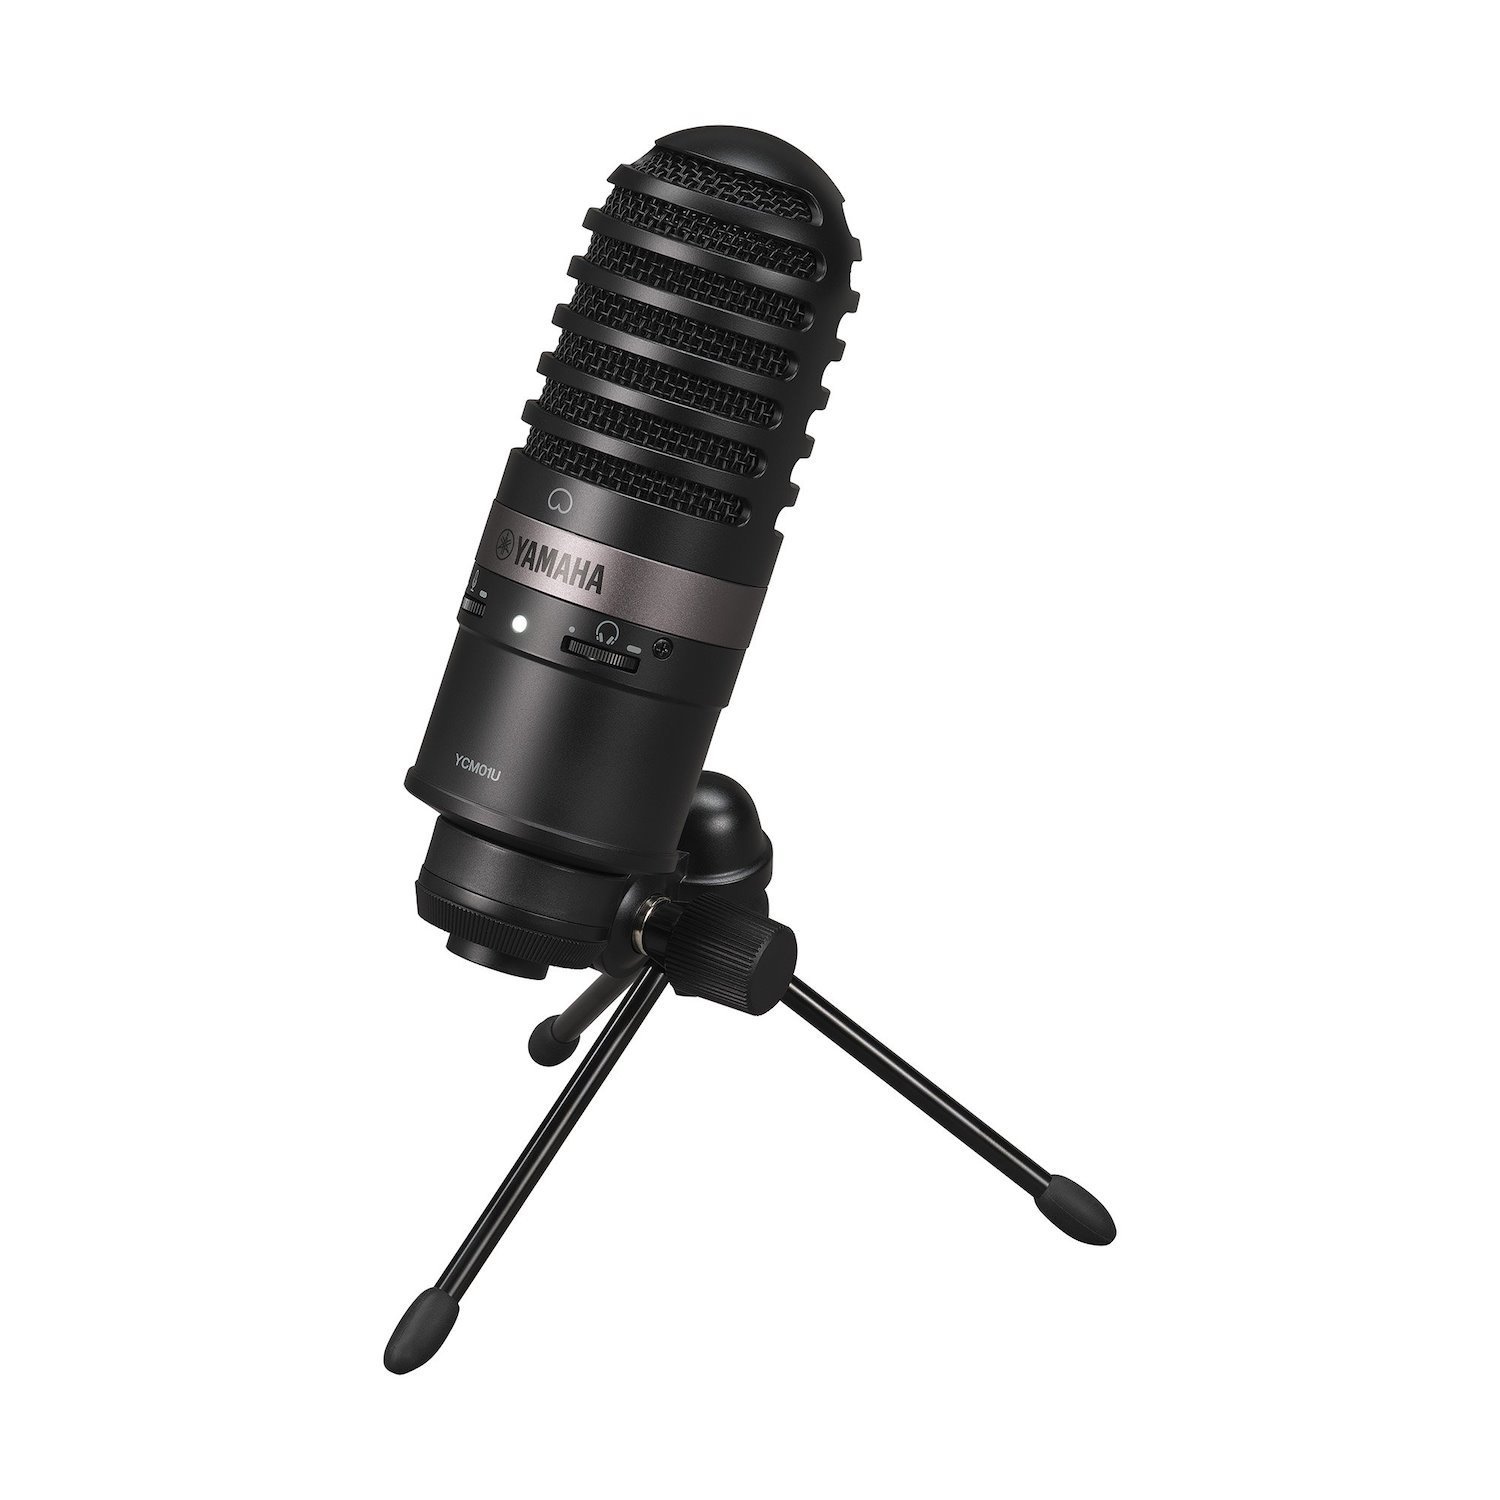 Yamaha Ycm01ub Plug-and-Play Usb Microphone, Black